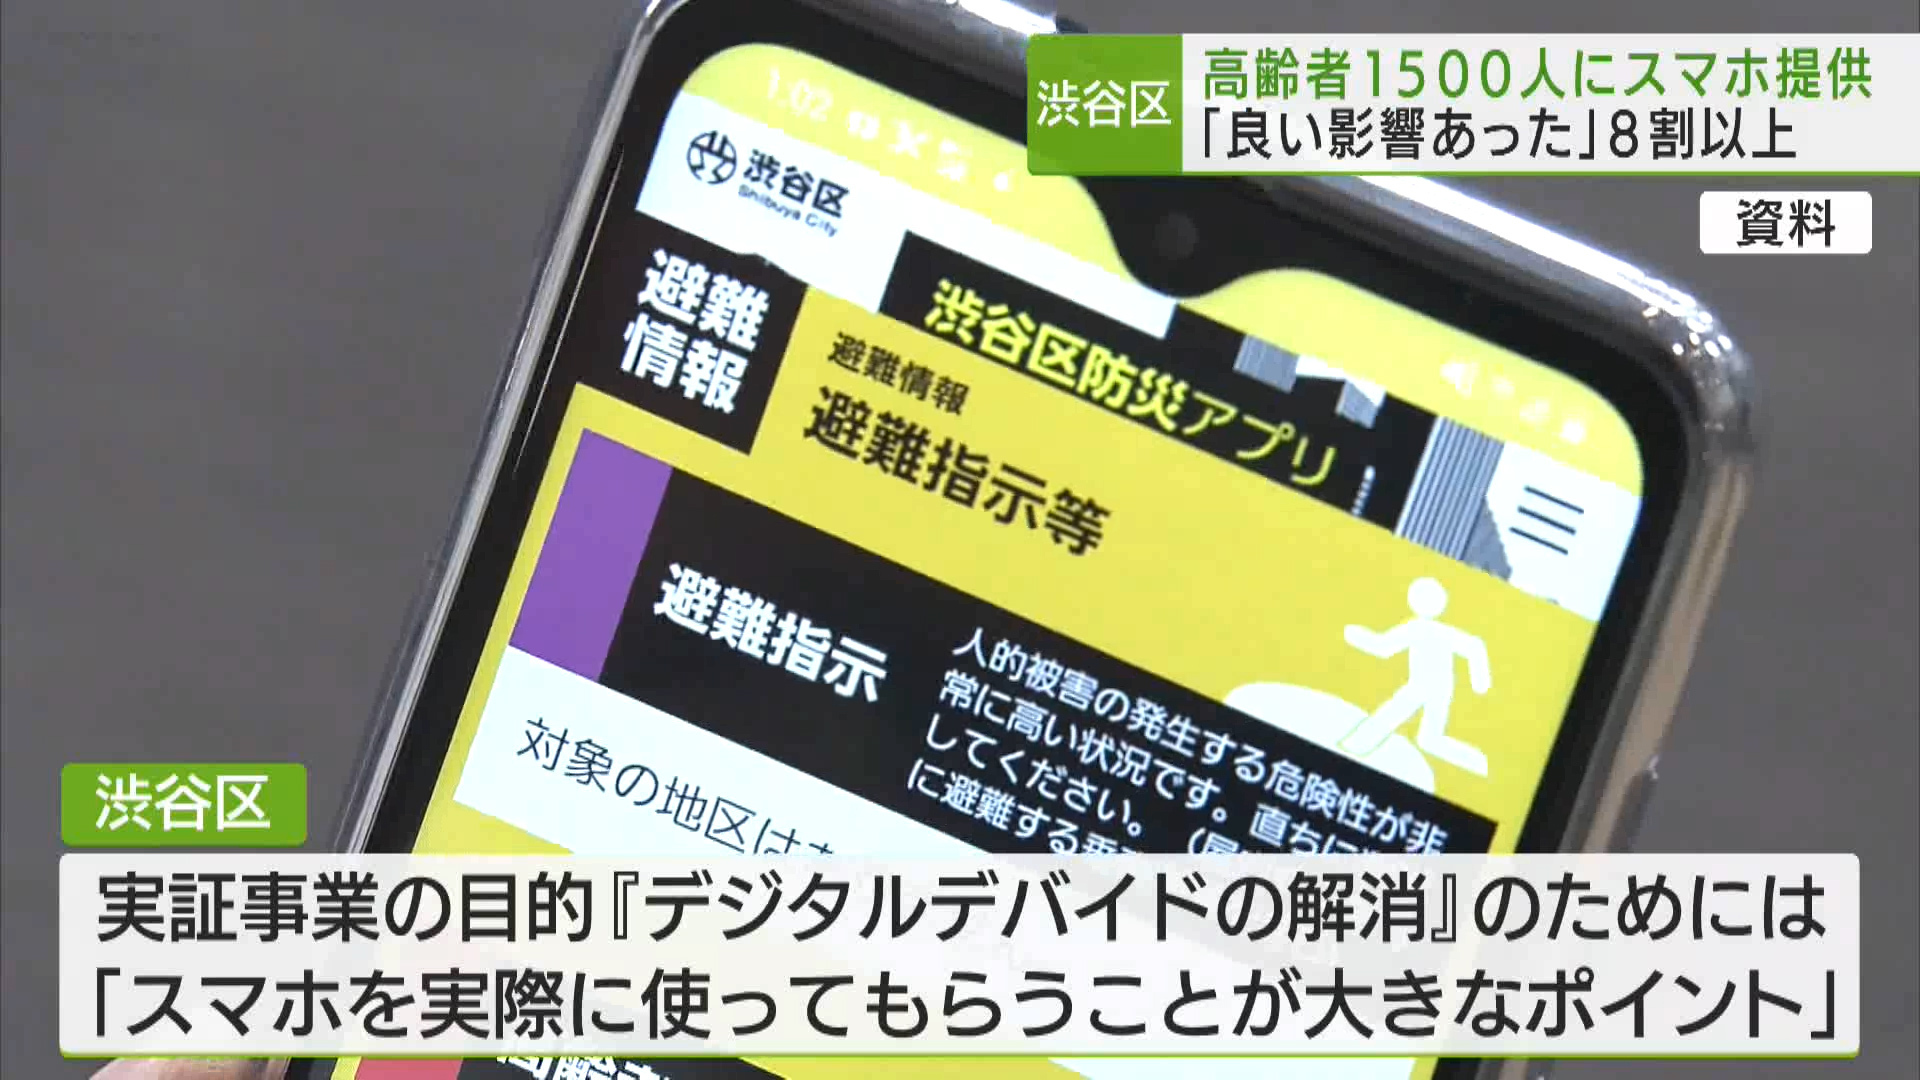 渋谷区はスマートフォンを持っていない区内の高齢者を対象に、スマホを無償で提供した実証事業の結果を公表しました。8割以上の人が良い影響があったと回答したということです。